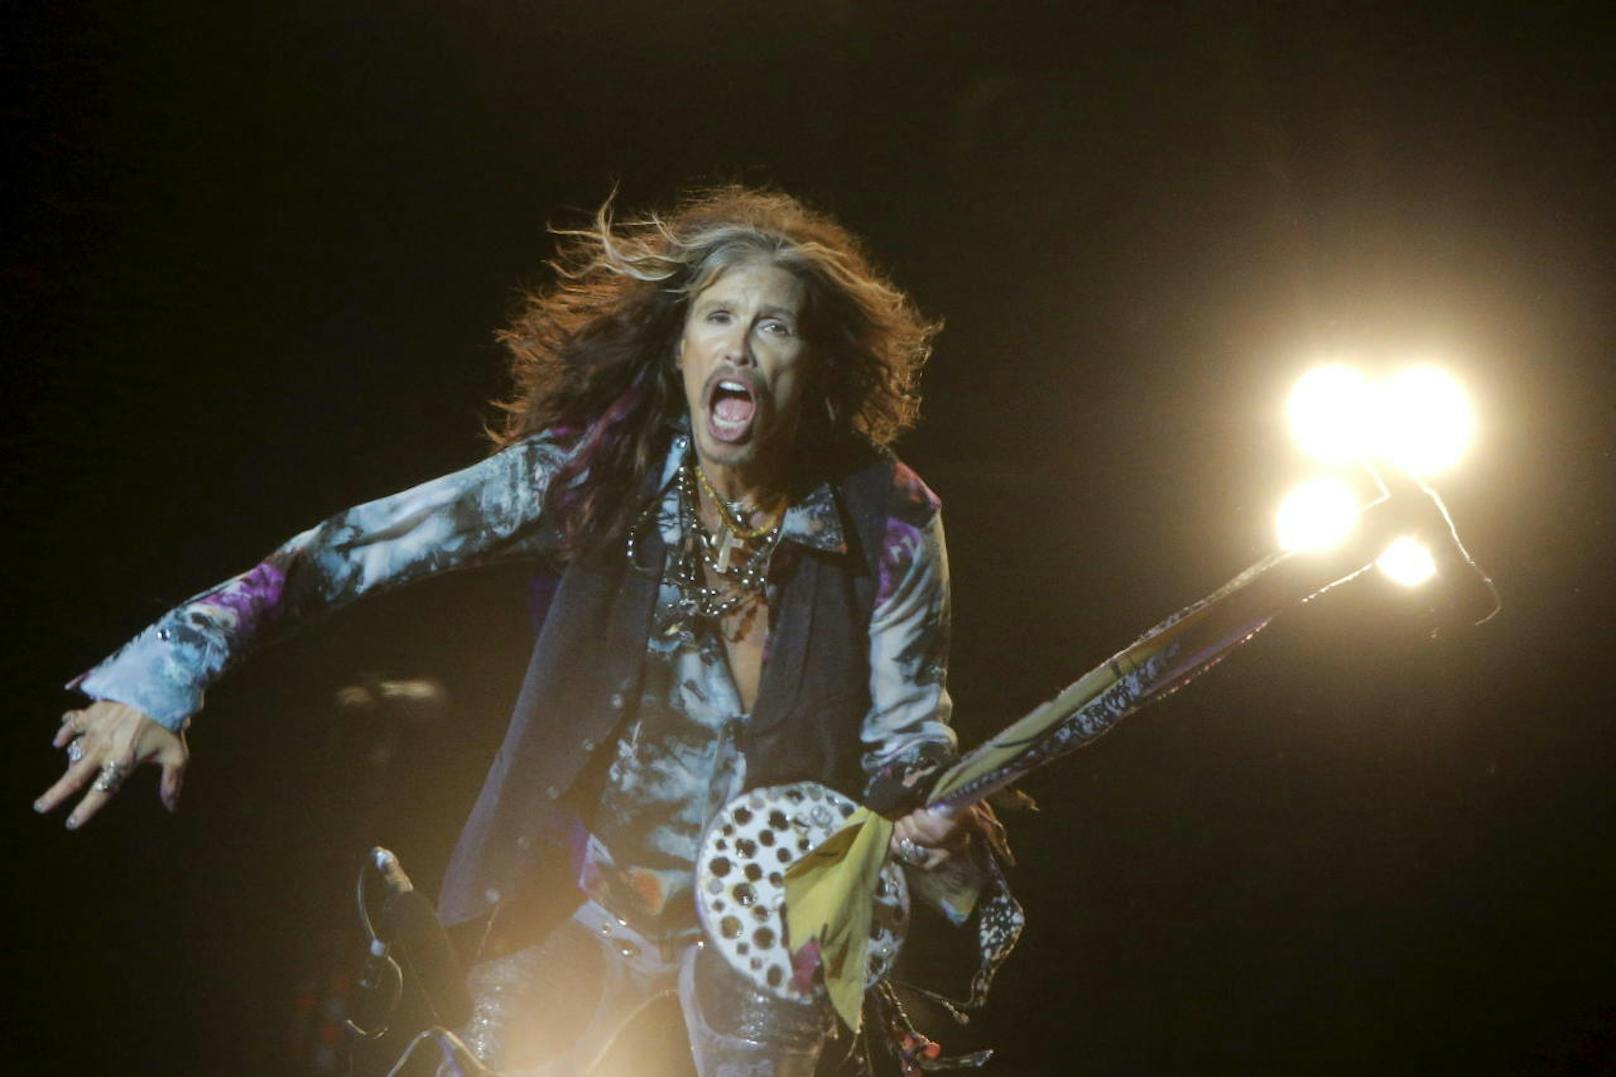 Der "Rolling Stone" listete Aerosmith auf Rang 59 der 100 größten Musiker aller Zeiten.